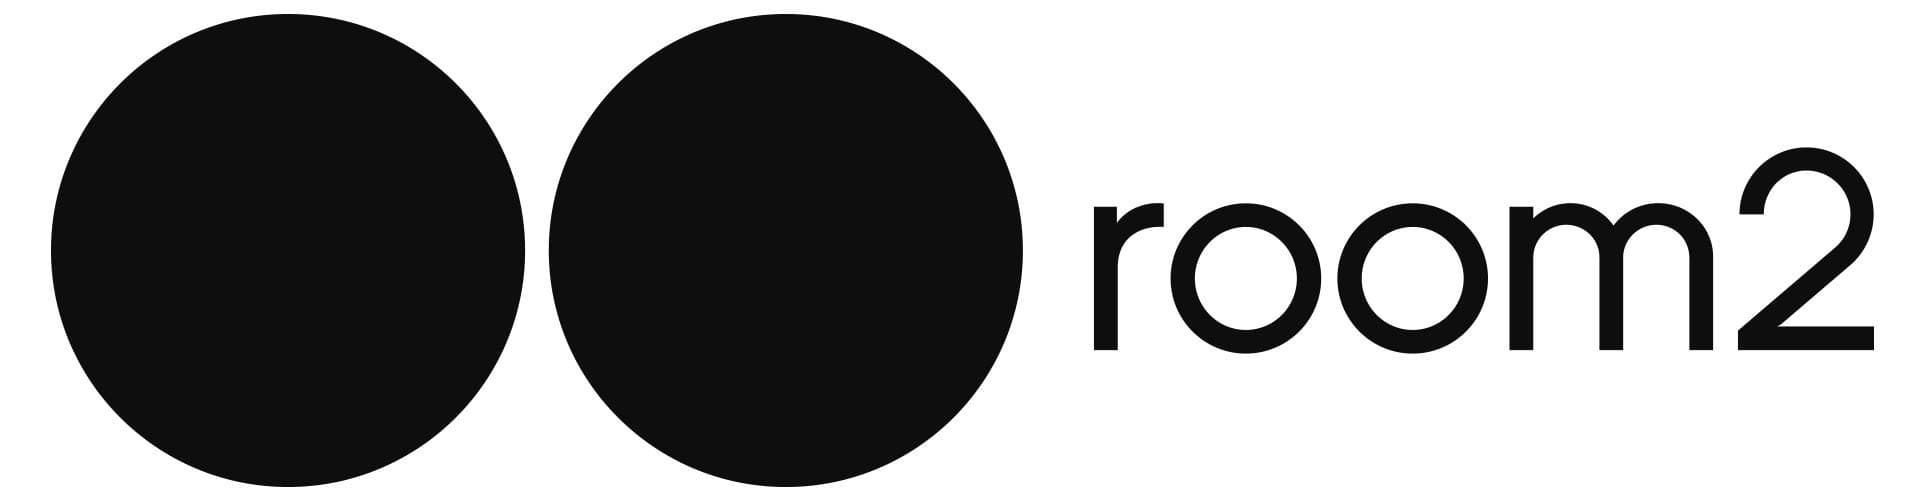 Room2-logo